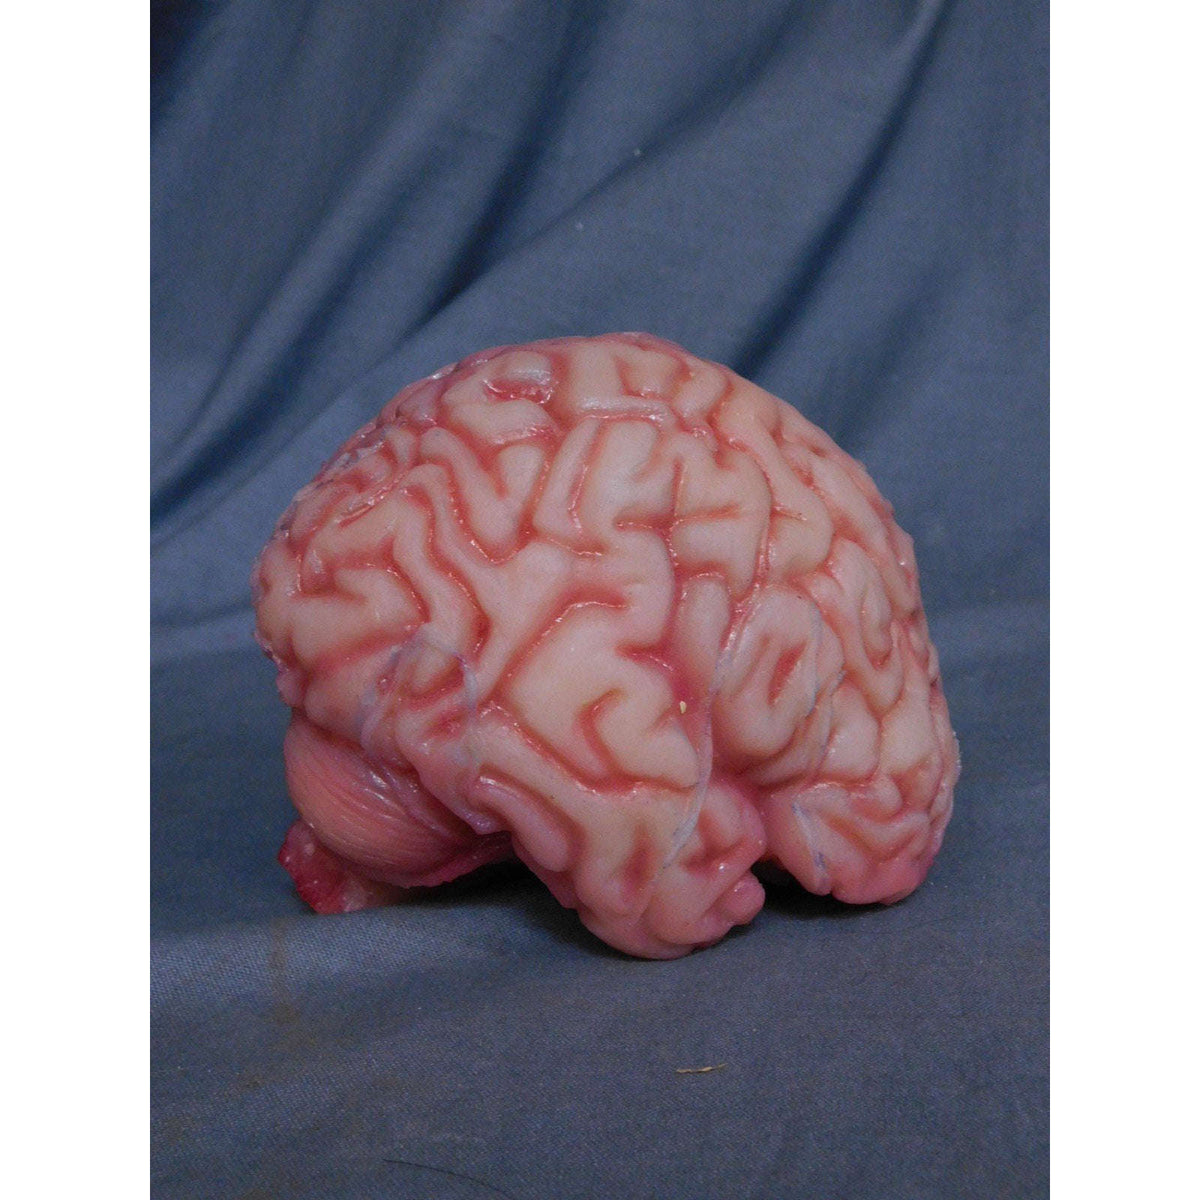 Realistic Silicone Rubber Life Size Brain